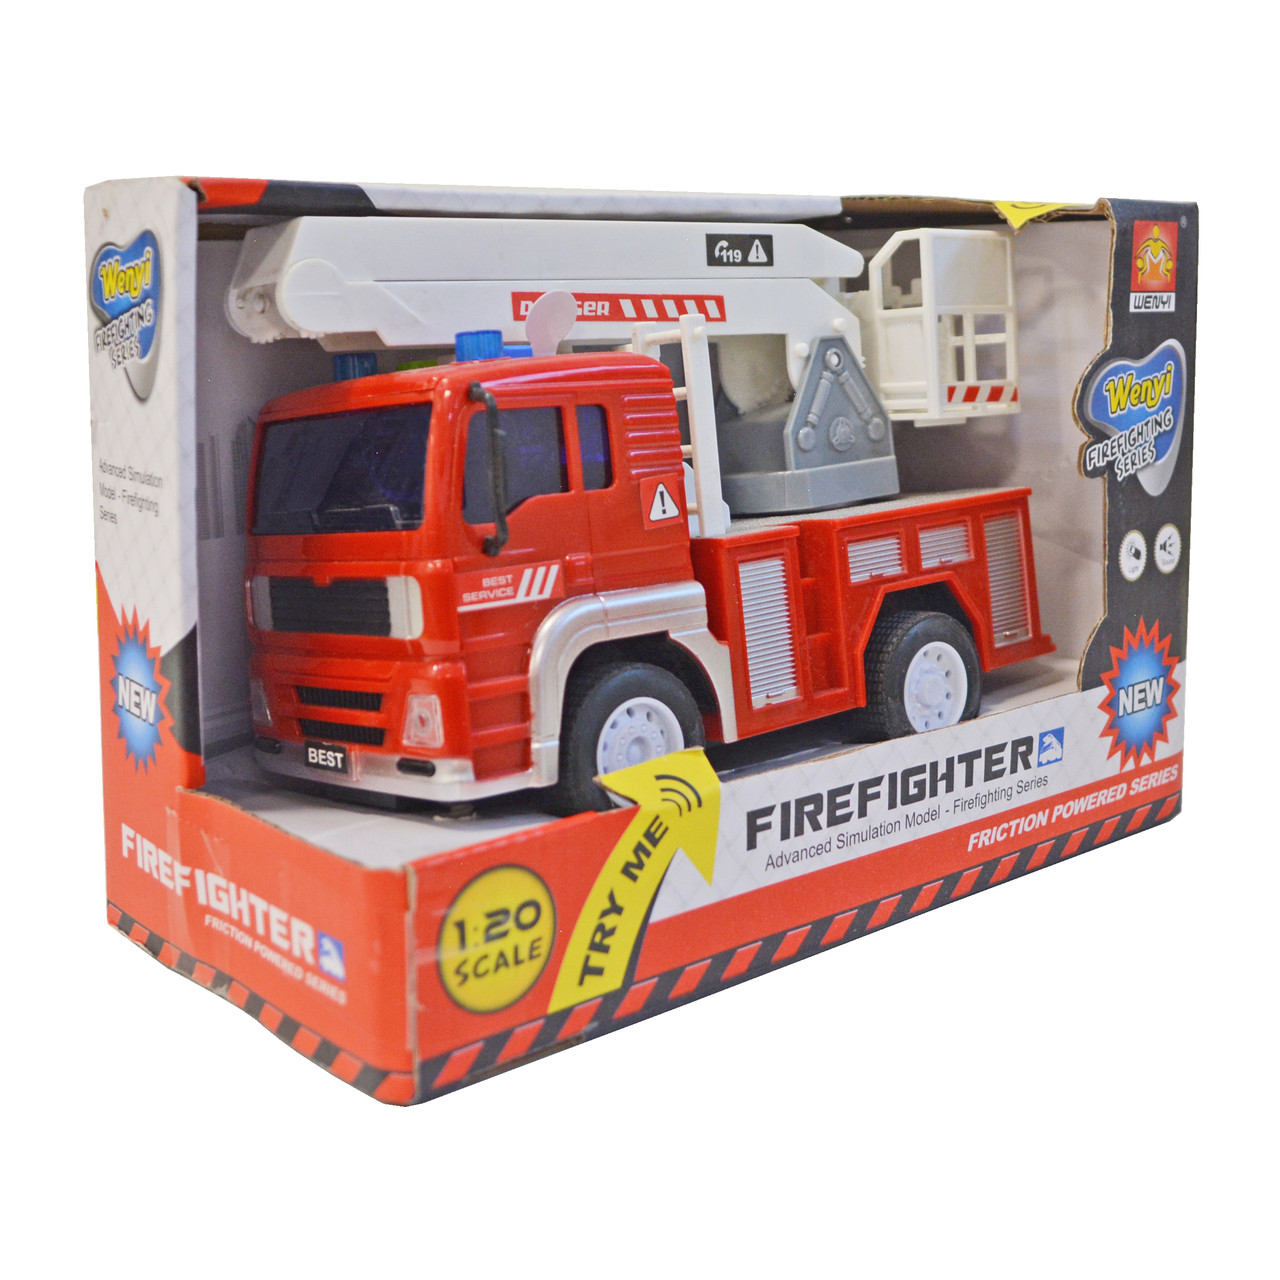 Пожарная машина Firefighter со звуковыми и световыми эффектами 1:20 (WY550C)